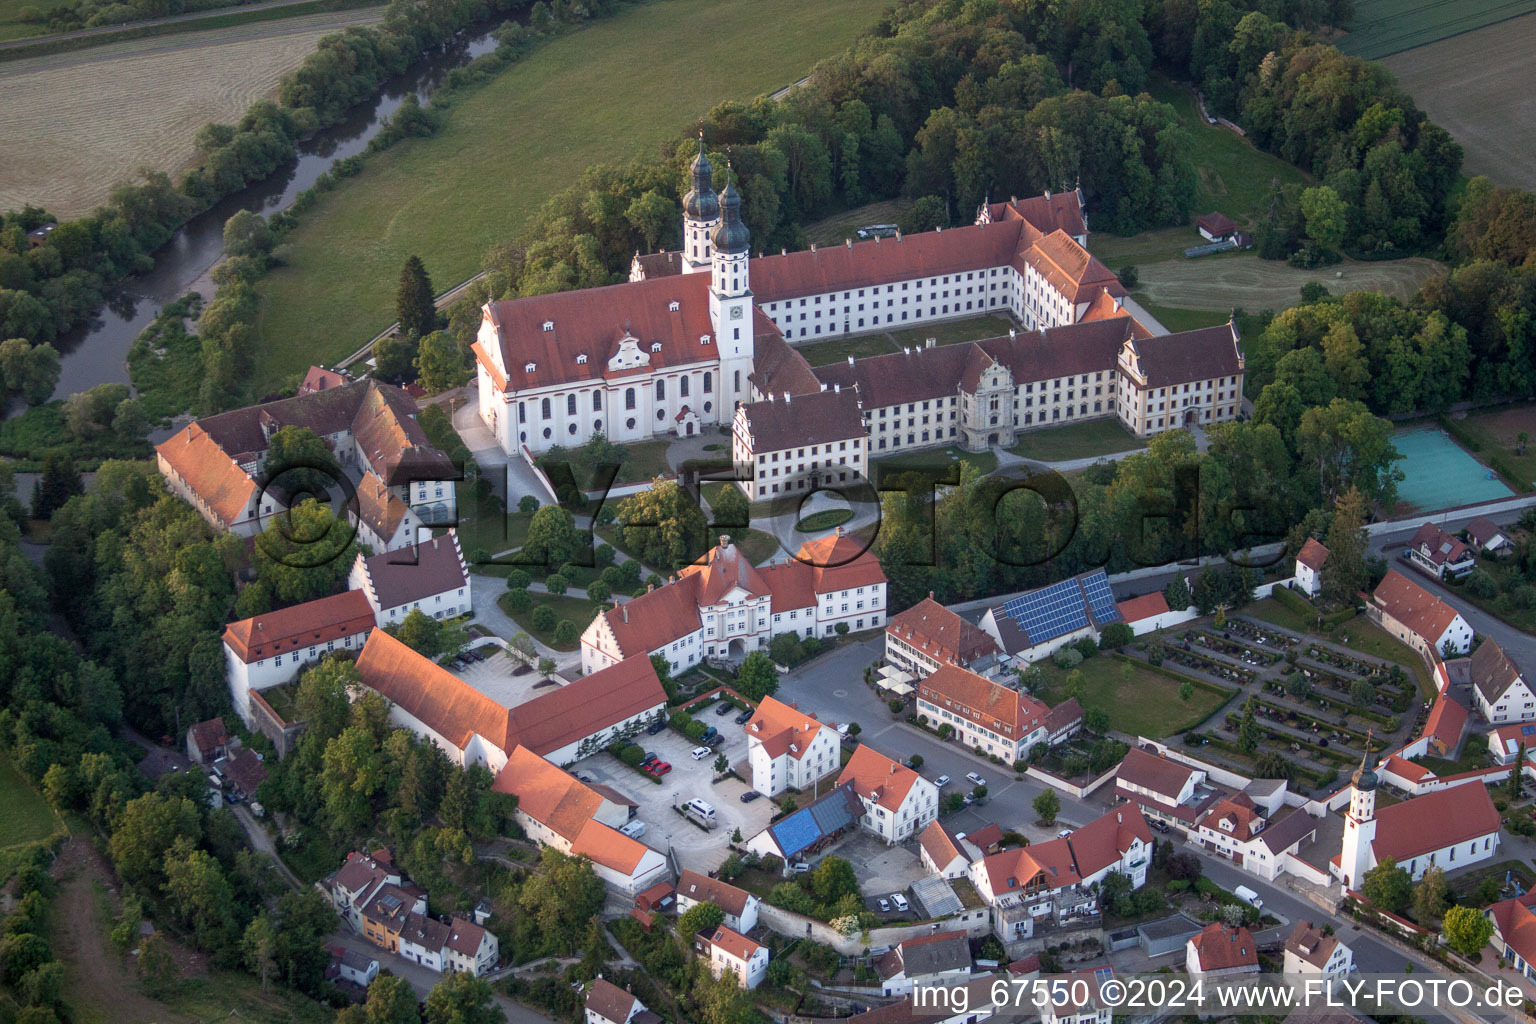 Vue aérienne de Le monastère Obermarchtal dans la commune Obermarchtal. Le complexe monastique fortifié avec l'église Saint-Pierre et Saint-Paul est désormais utilisé par l'Académie paroissiale de formation des enseignants Obermarchtal du diocèse de Rottenburg-Stuttgart. à Obermarchtal dans le département Bade-Wurtemberg, Allemagne